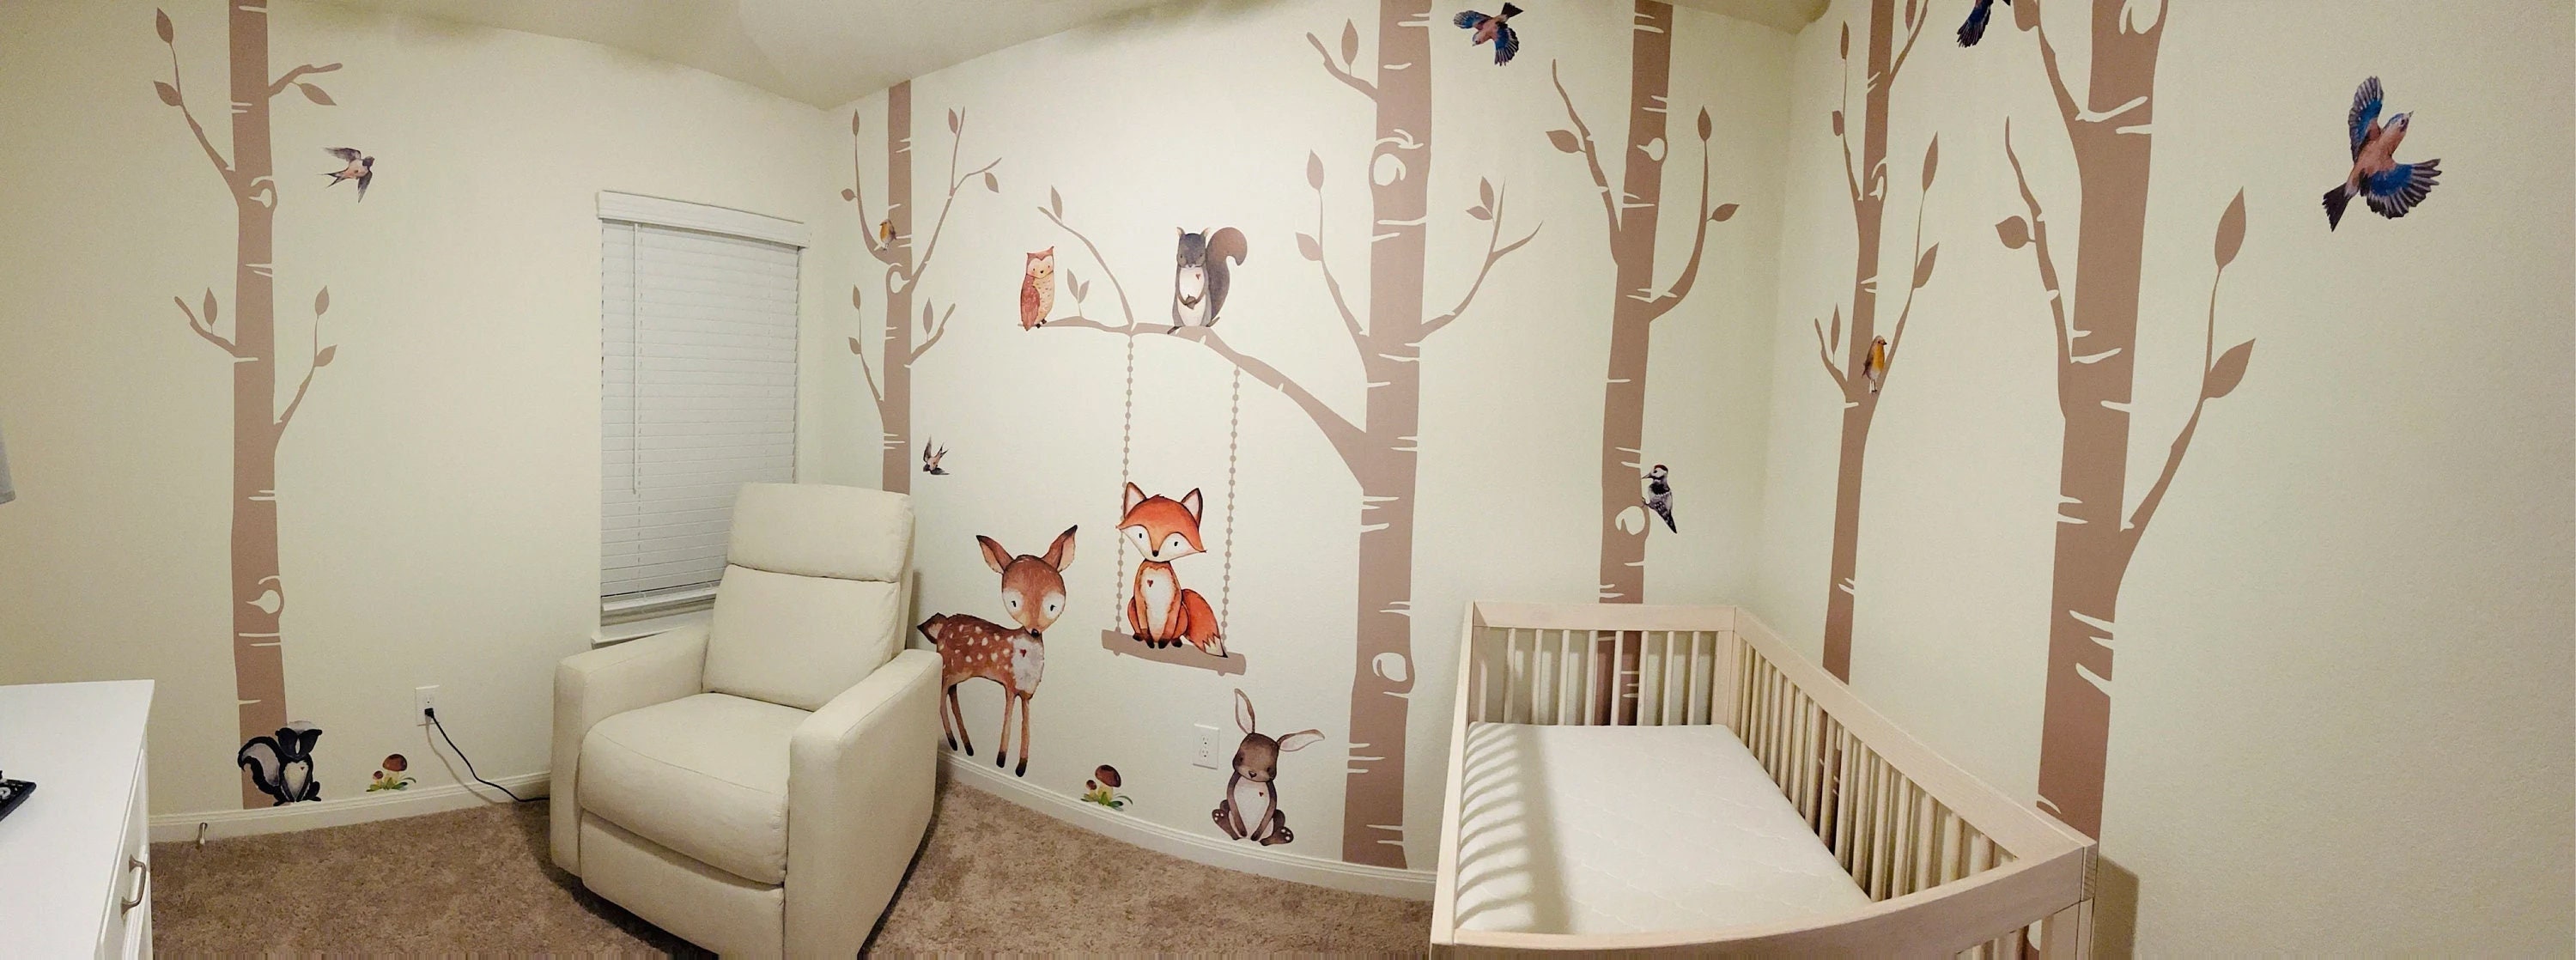 Decorazione da parete per la cameretta dei boschi, 6 alberi di betulla,  SENZA ANIMALI, adesivo da parete per cameretta dei bambini, facile da  installare -  Italia